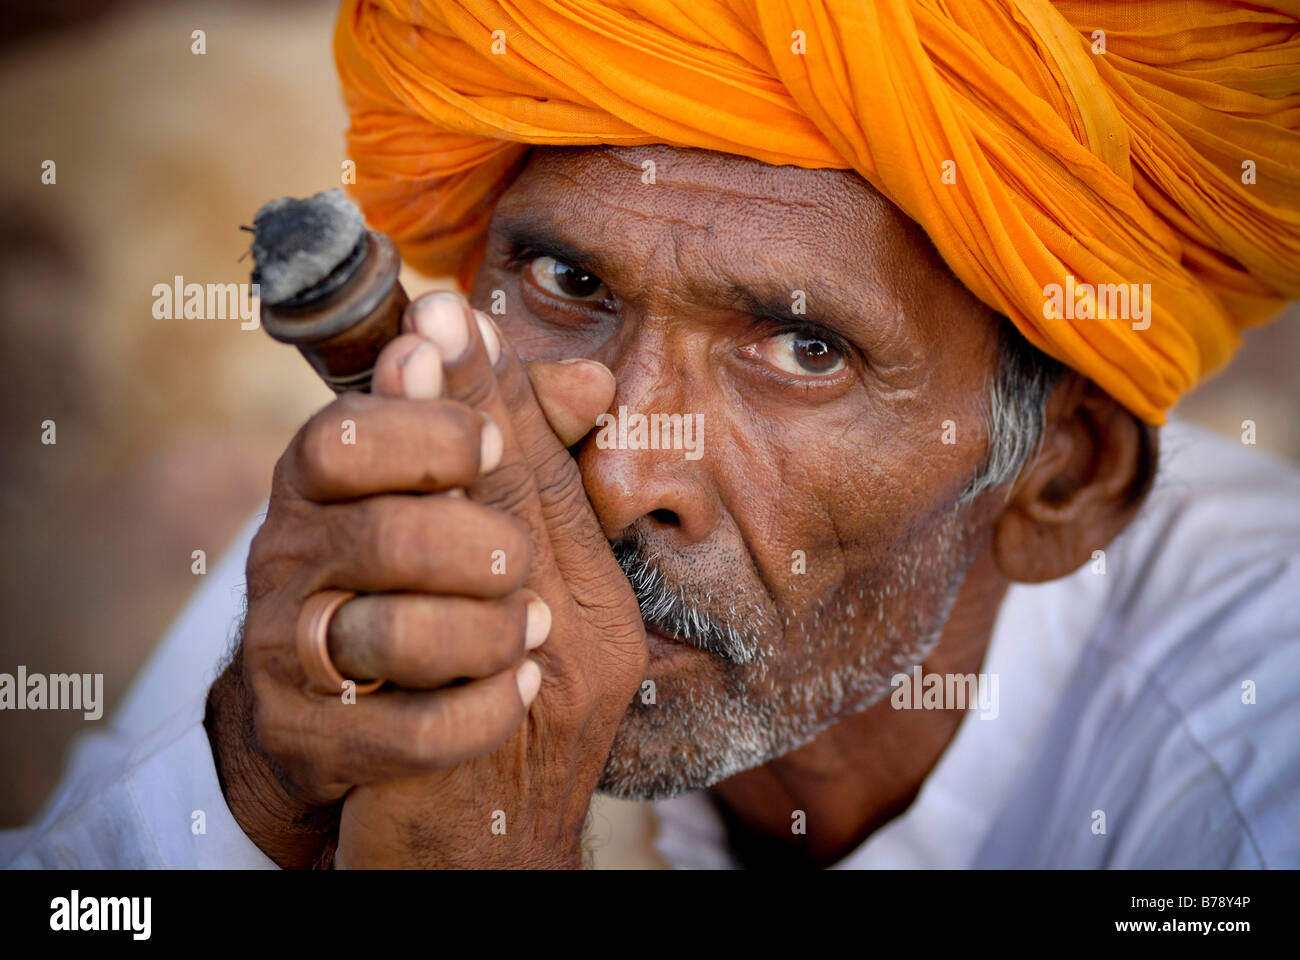 Man wearing orange turban, smoking chilam, Ram Devra pilgrims festival, Ramdevra, Pokhran, Rajasthan, North India, Asia Stock Photo